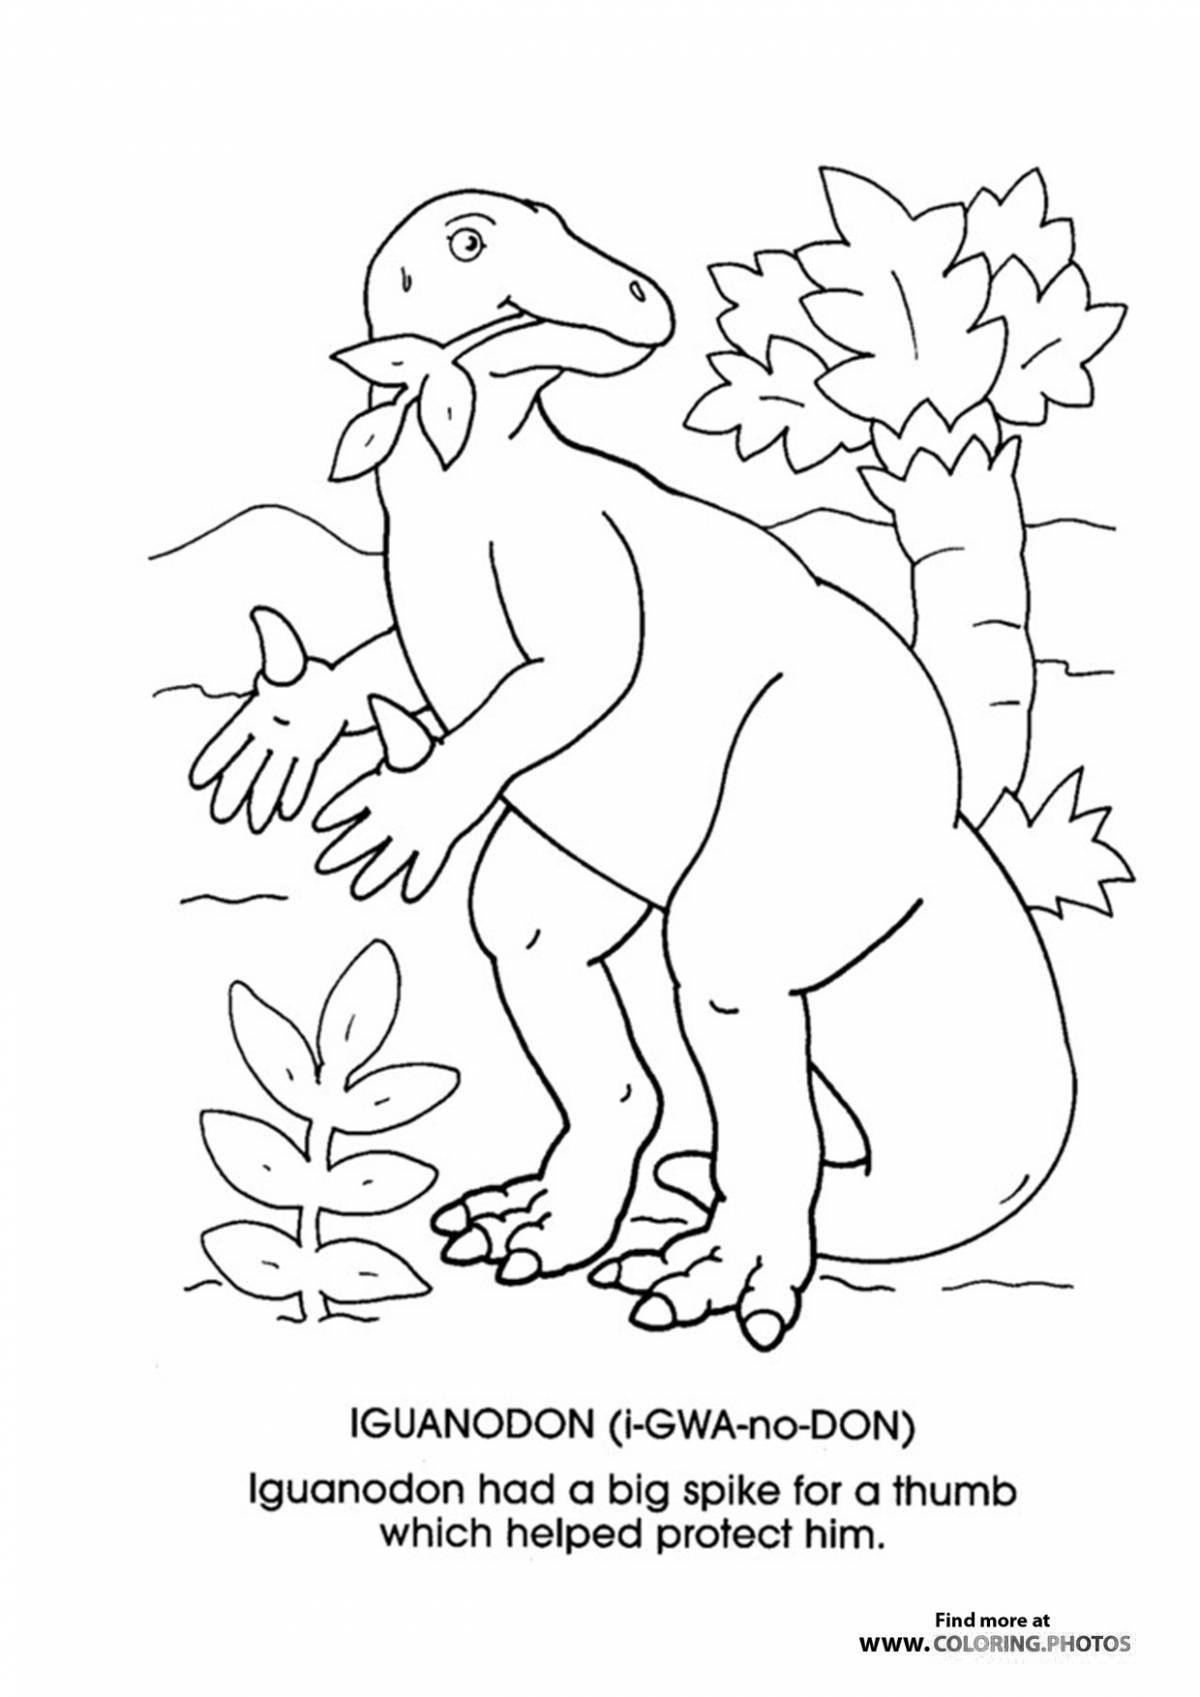 Fun iguanodon coloring book